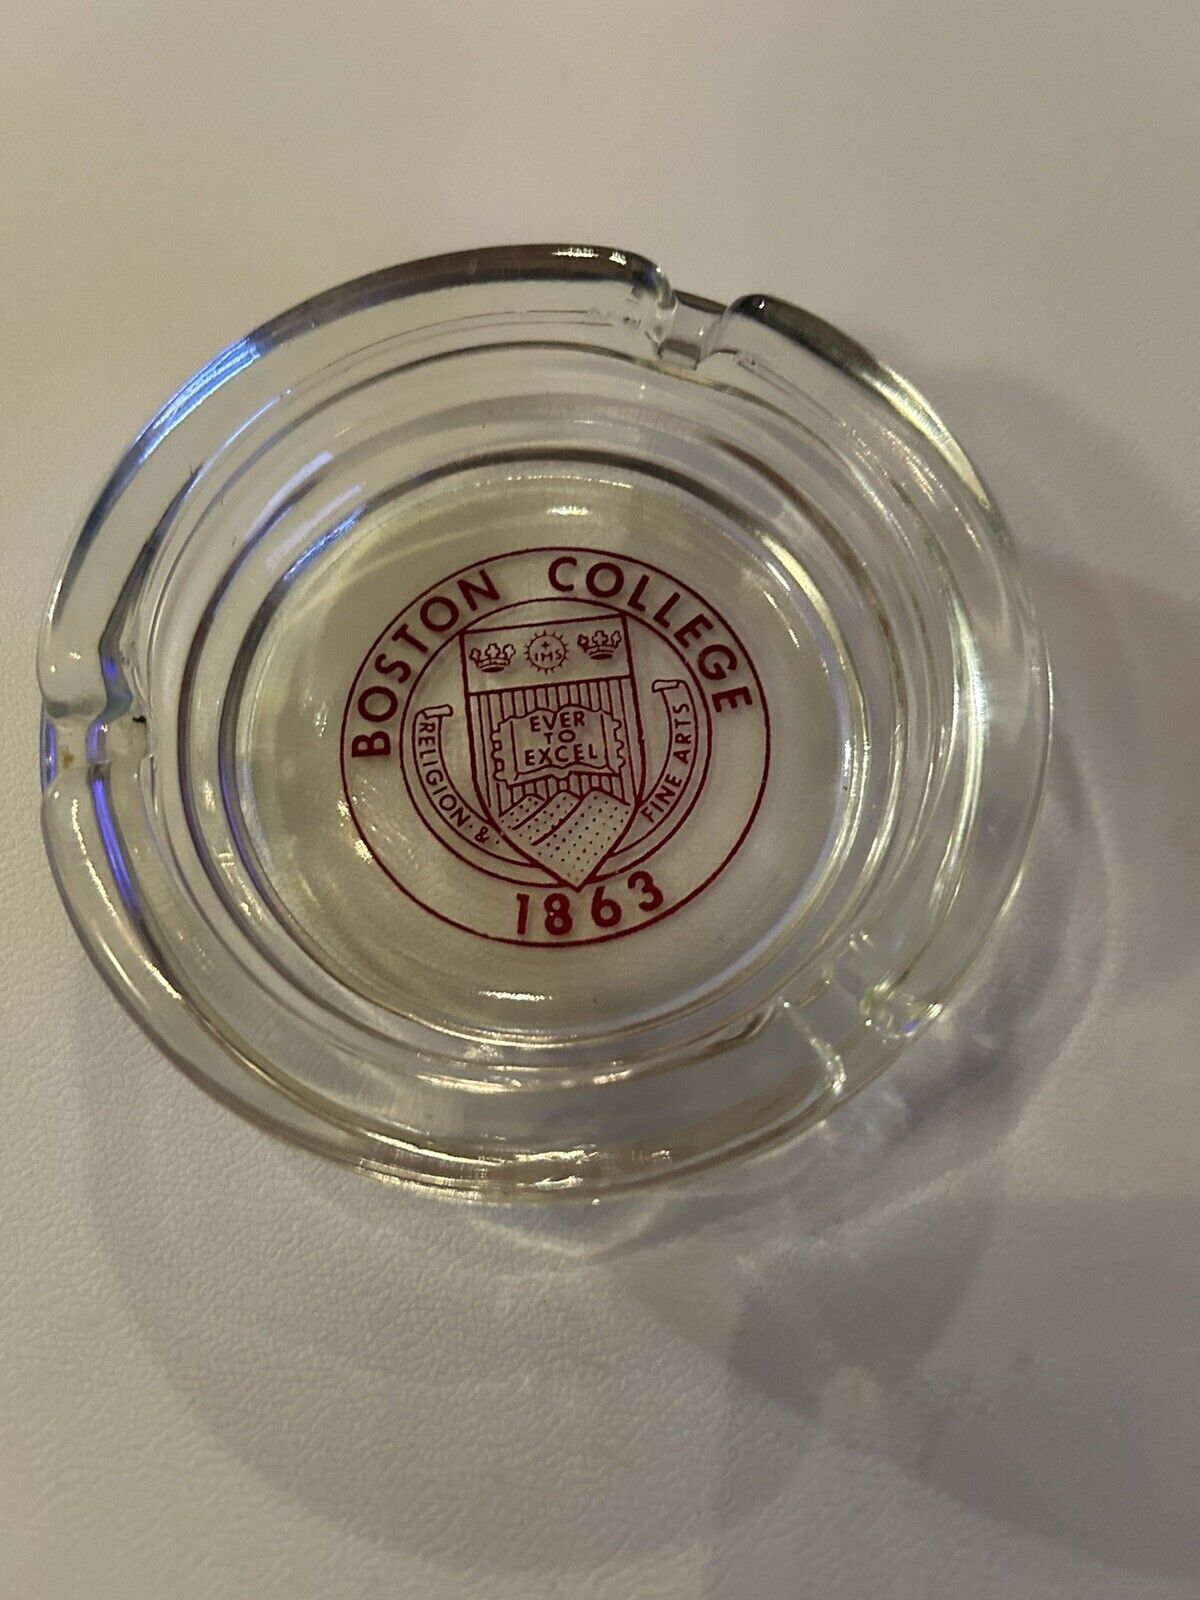 Vintage Boston College Numen  1863 Glass Ashtray